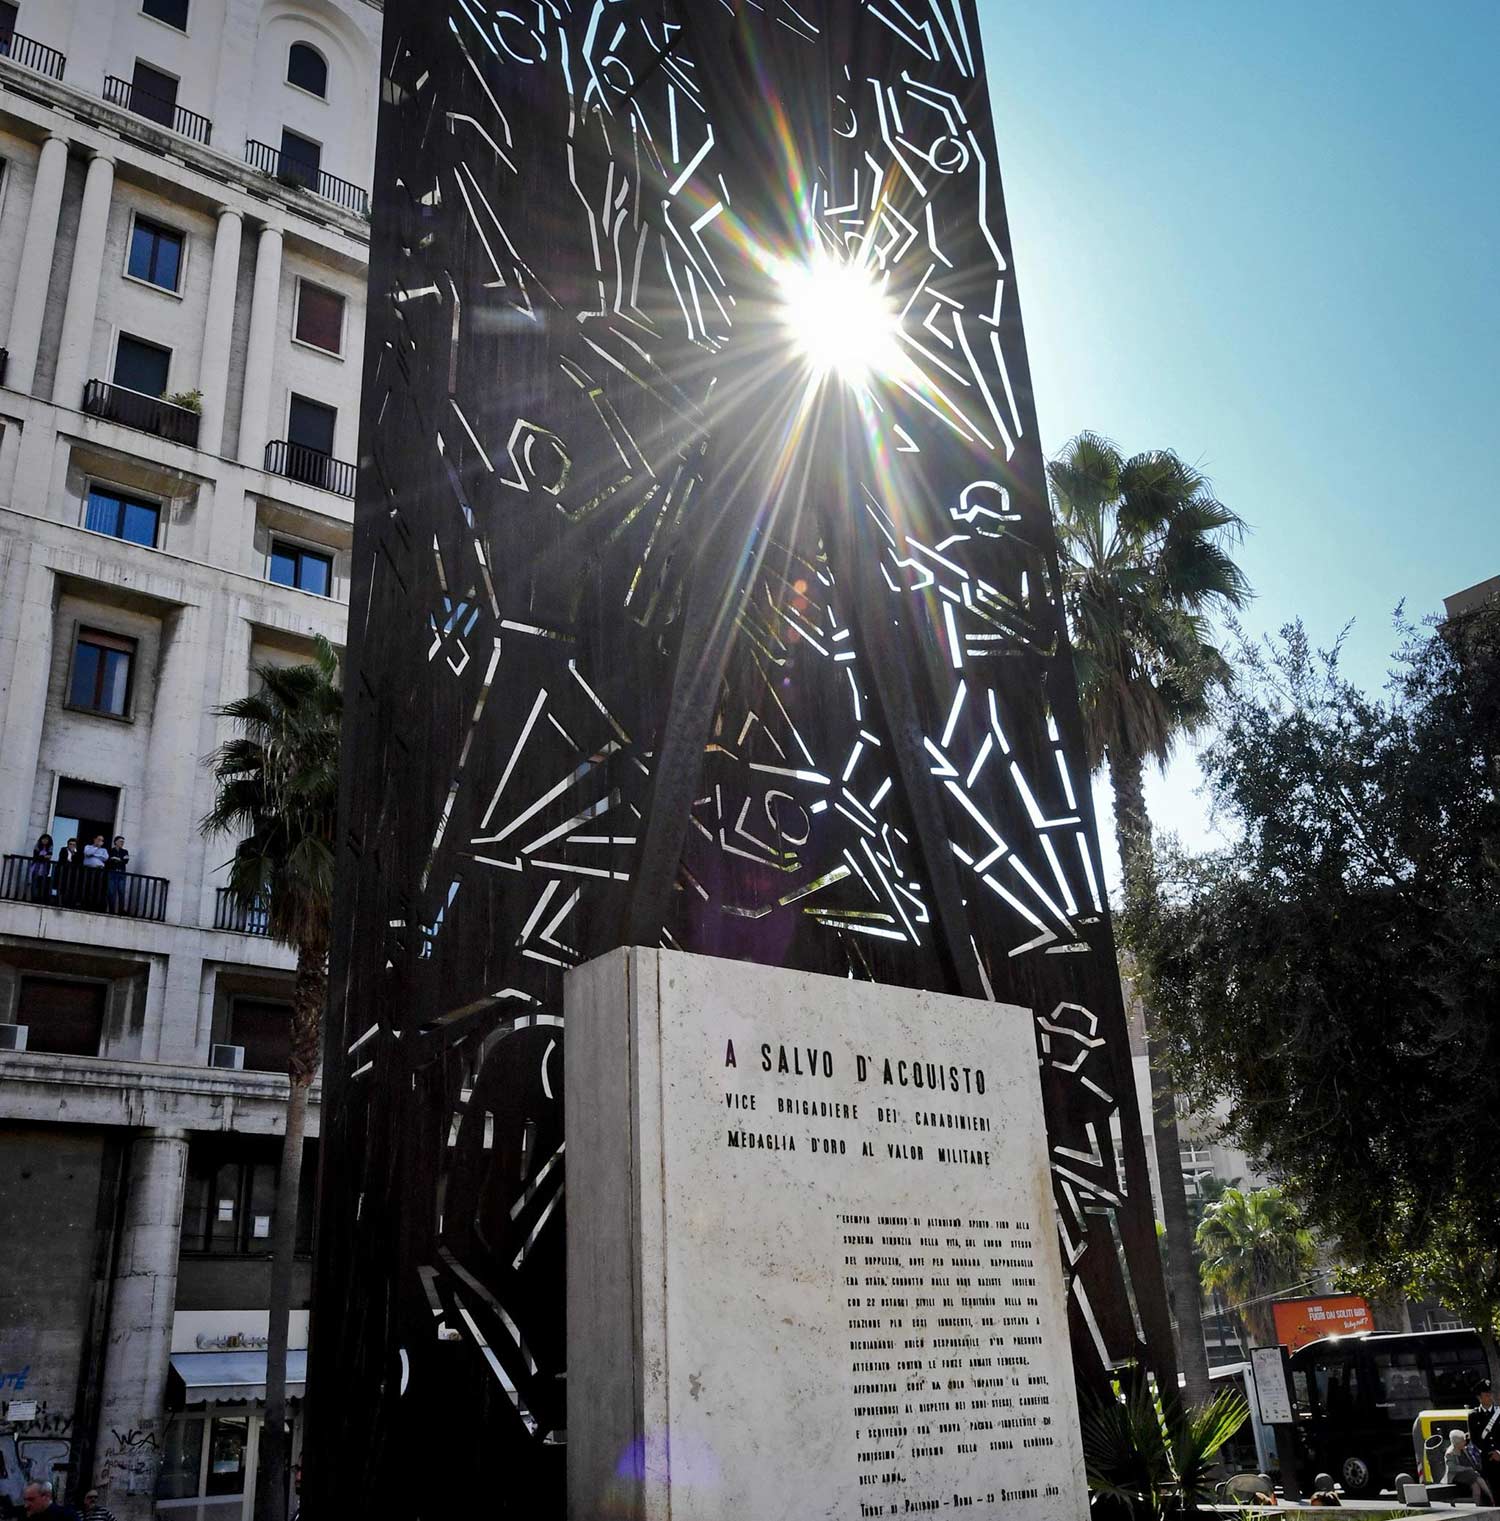 La stele commemorativa dedicata a D’Acquisto inaugurata nel 1960 a Palidoro (Roma) © Ansa/Ciro Fusco